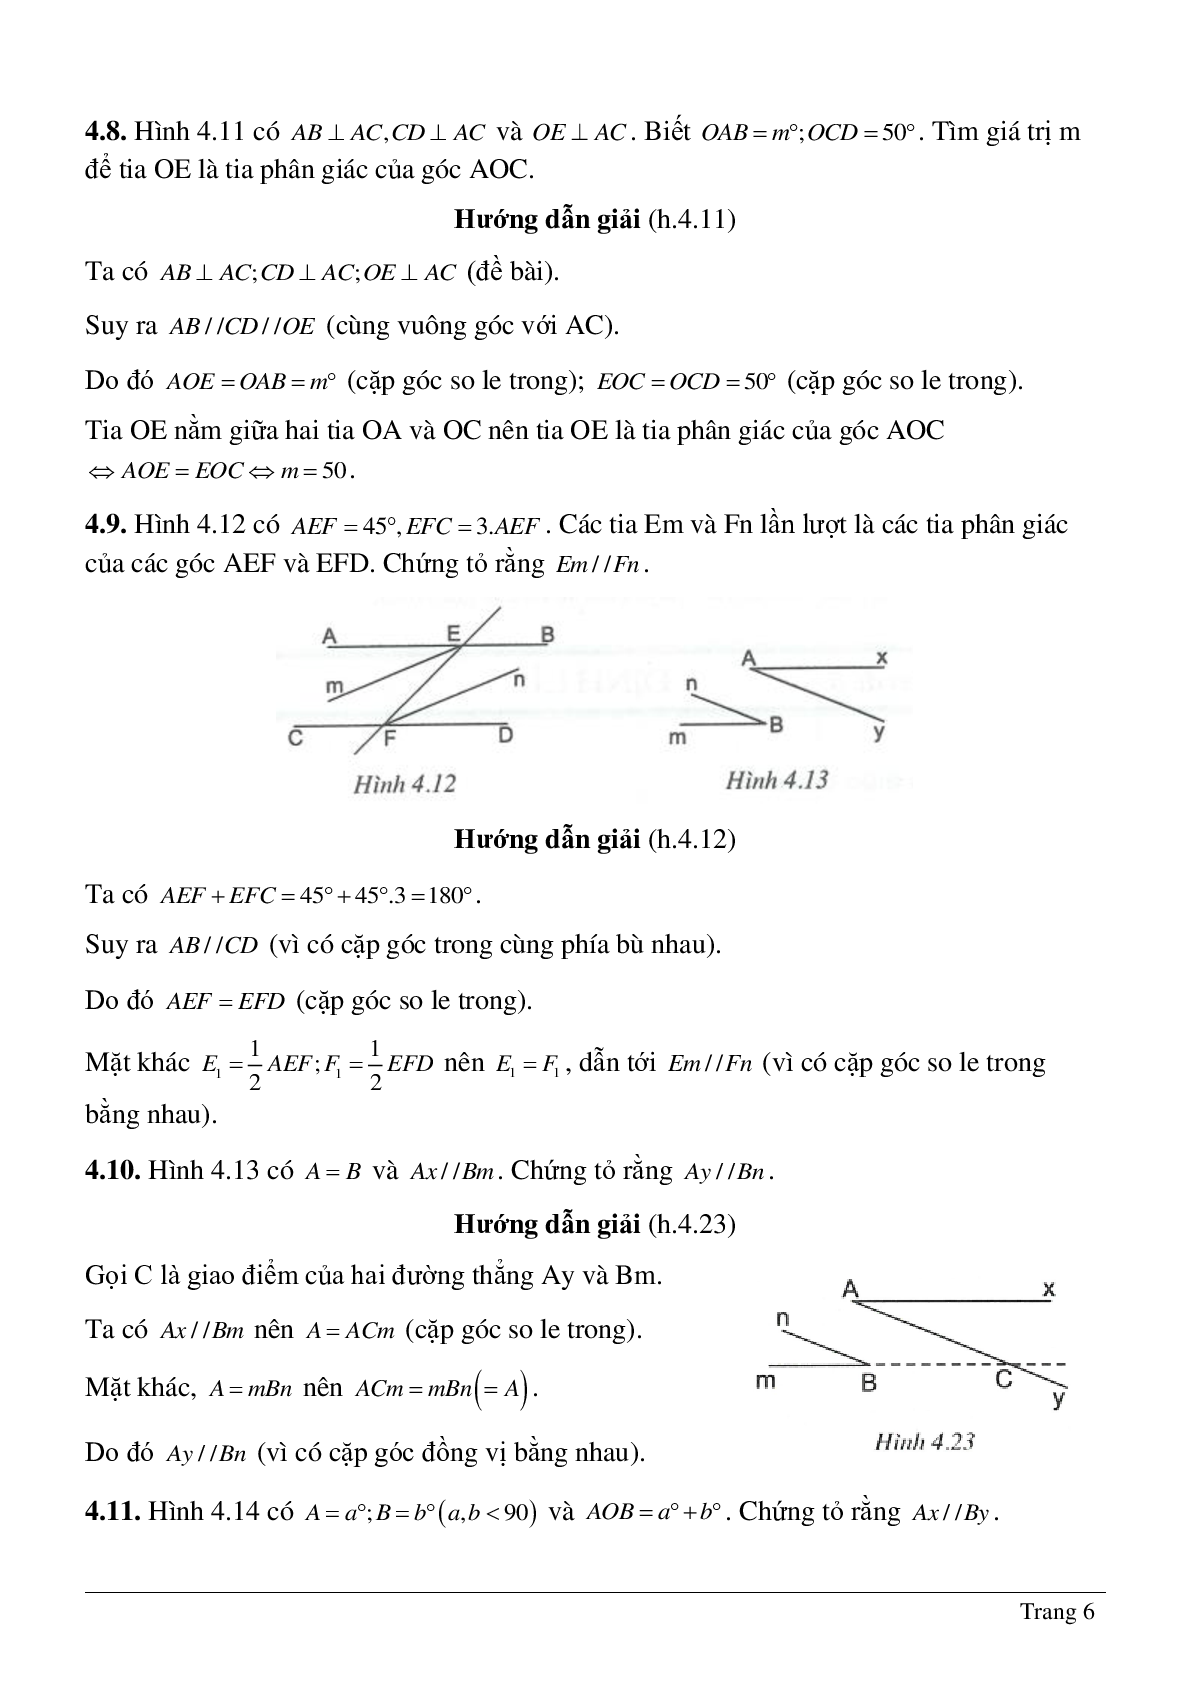 Phương pháp giải và bài tập về Tiên đề Ơ-clit - Tính chất của hai đường thẳng song song có lời giải (trang 6)